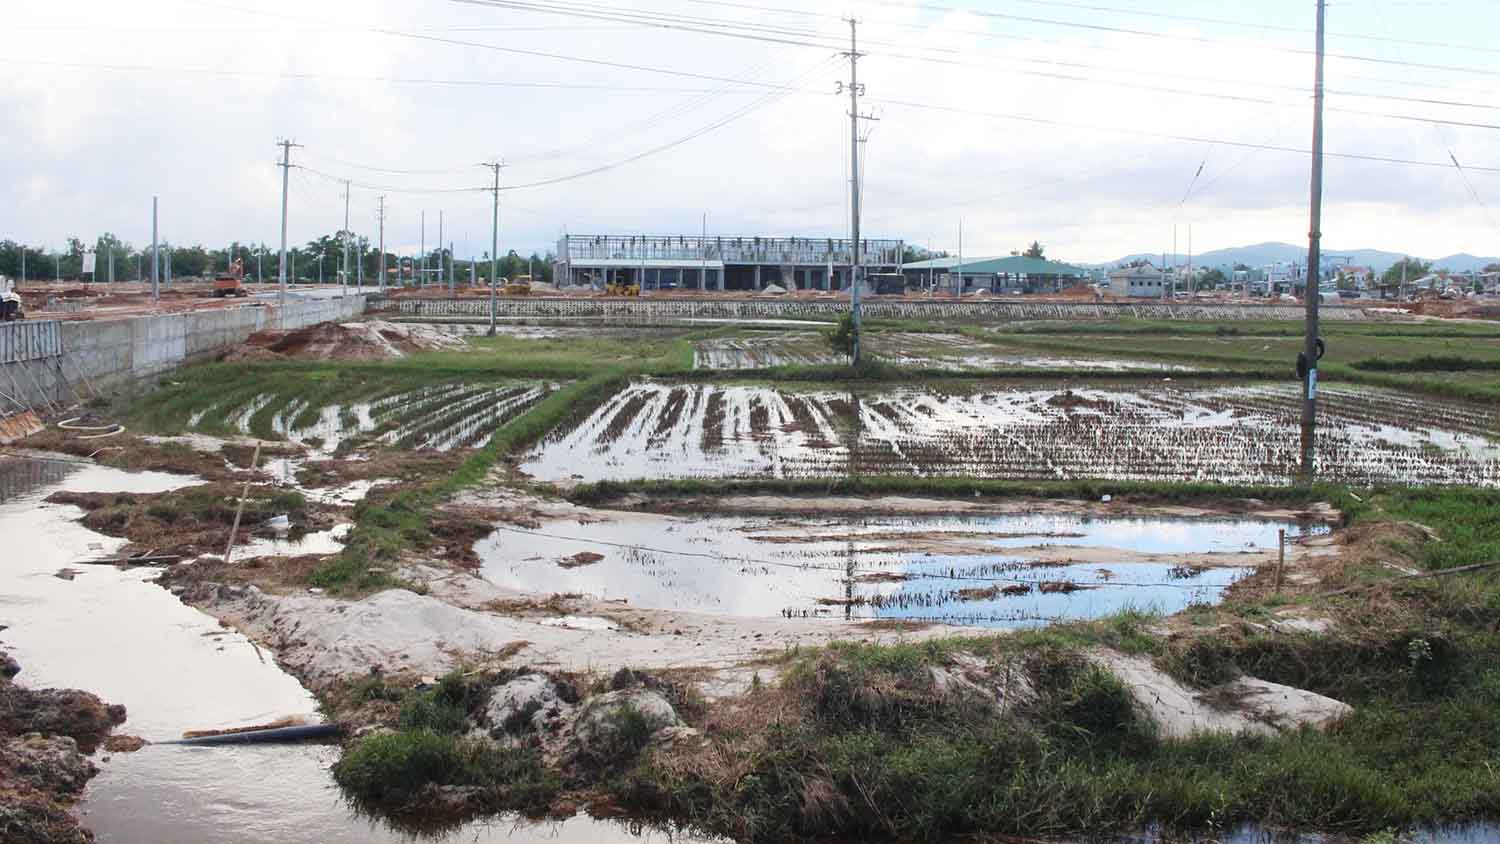 Khu phố chợ Chiên Đàn được giao đất chủ yếu trên ruộng lúa, thường xuyên xảy ra ngập úng đất nông nghiệp của người dân khi mưa kéo dài.